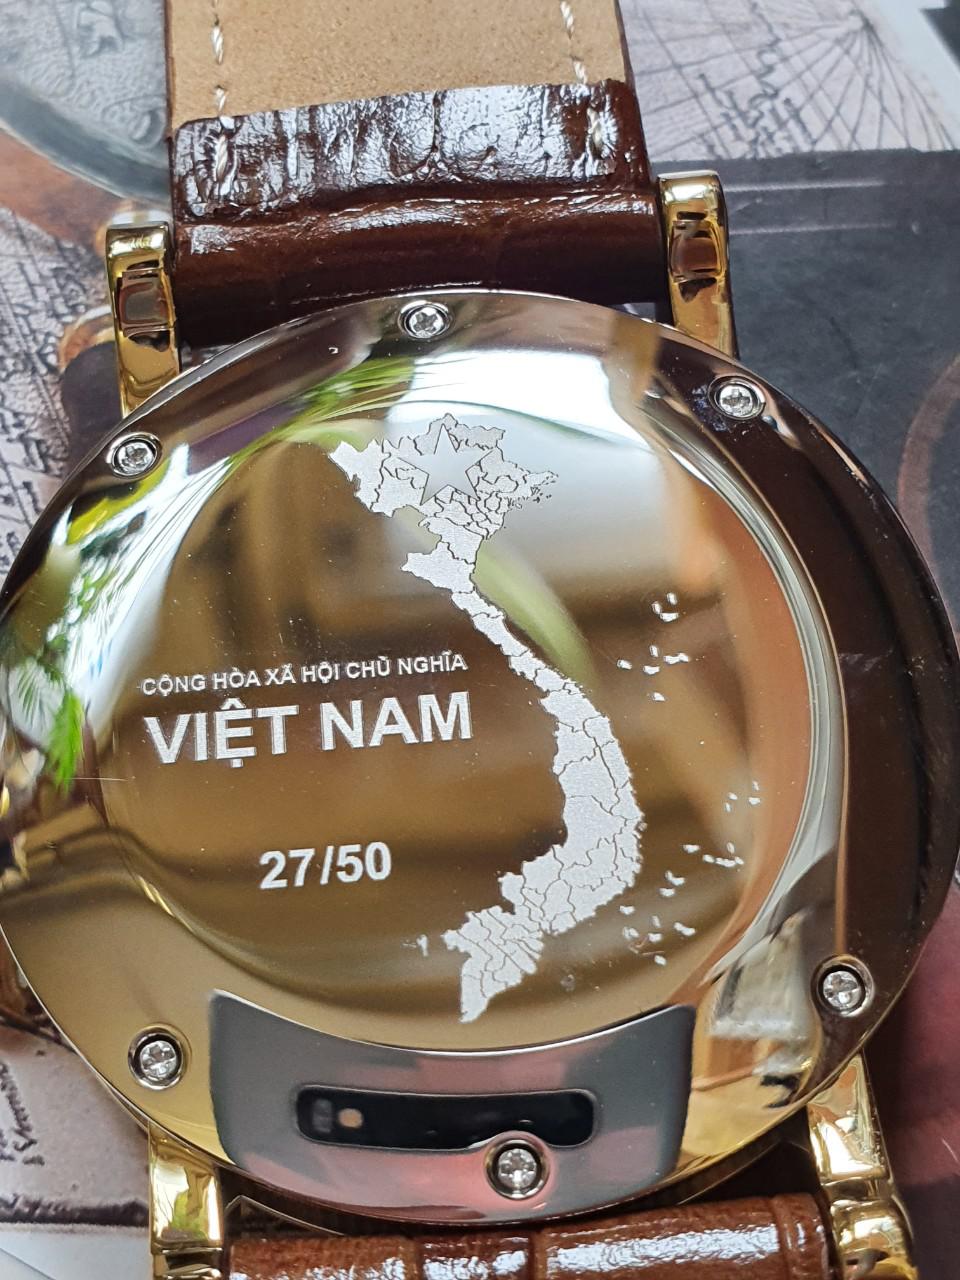 Đồng hồ Nga 252VN088 Quốc huy Việt Nam